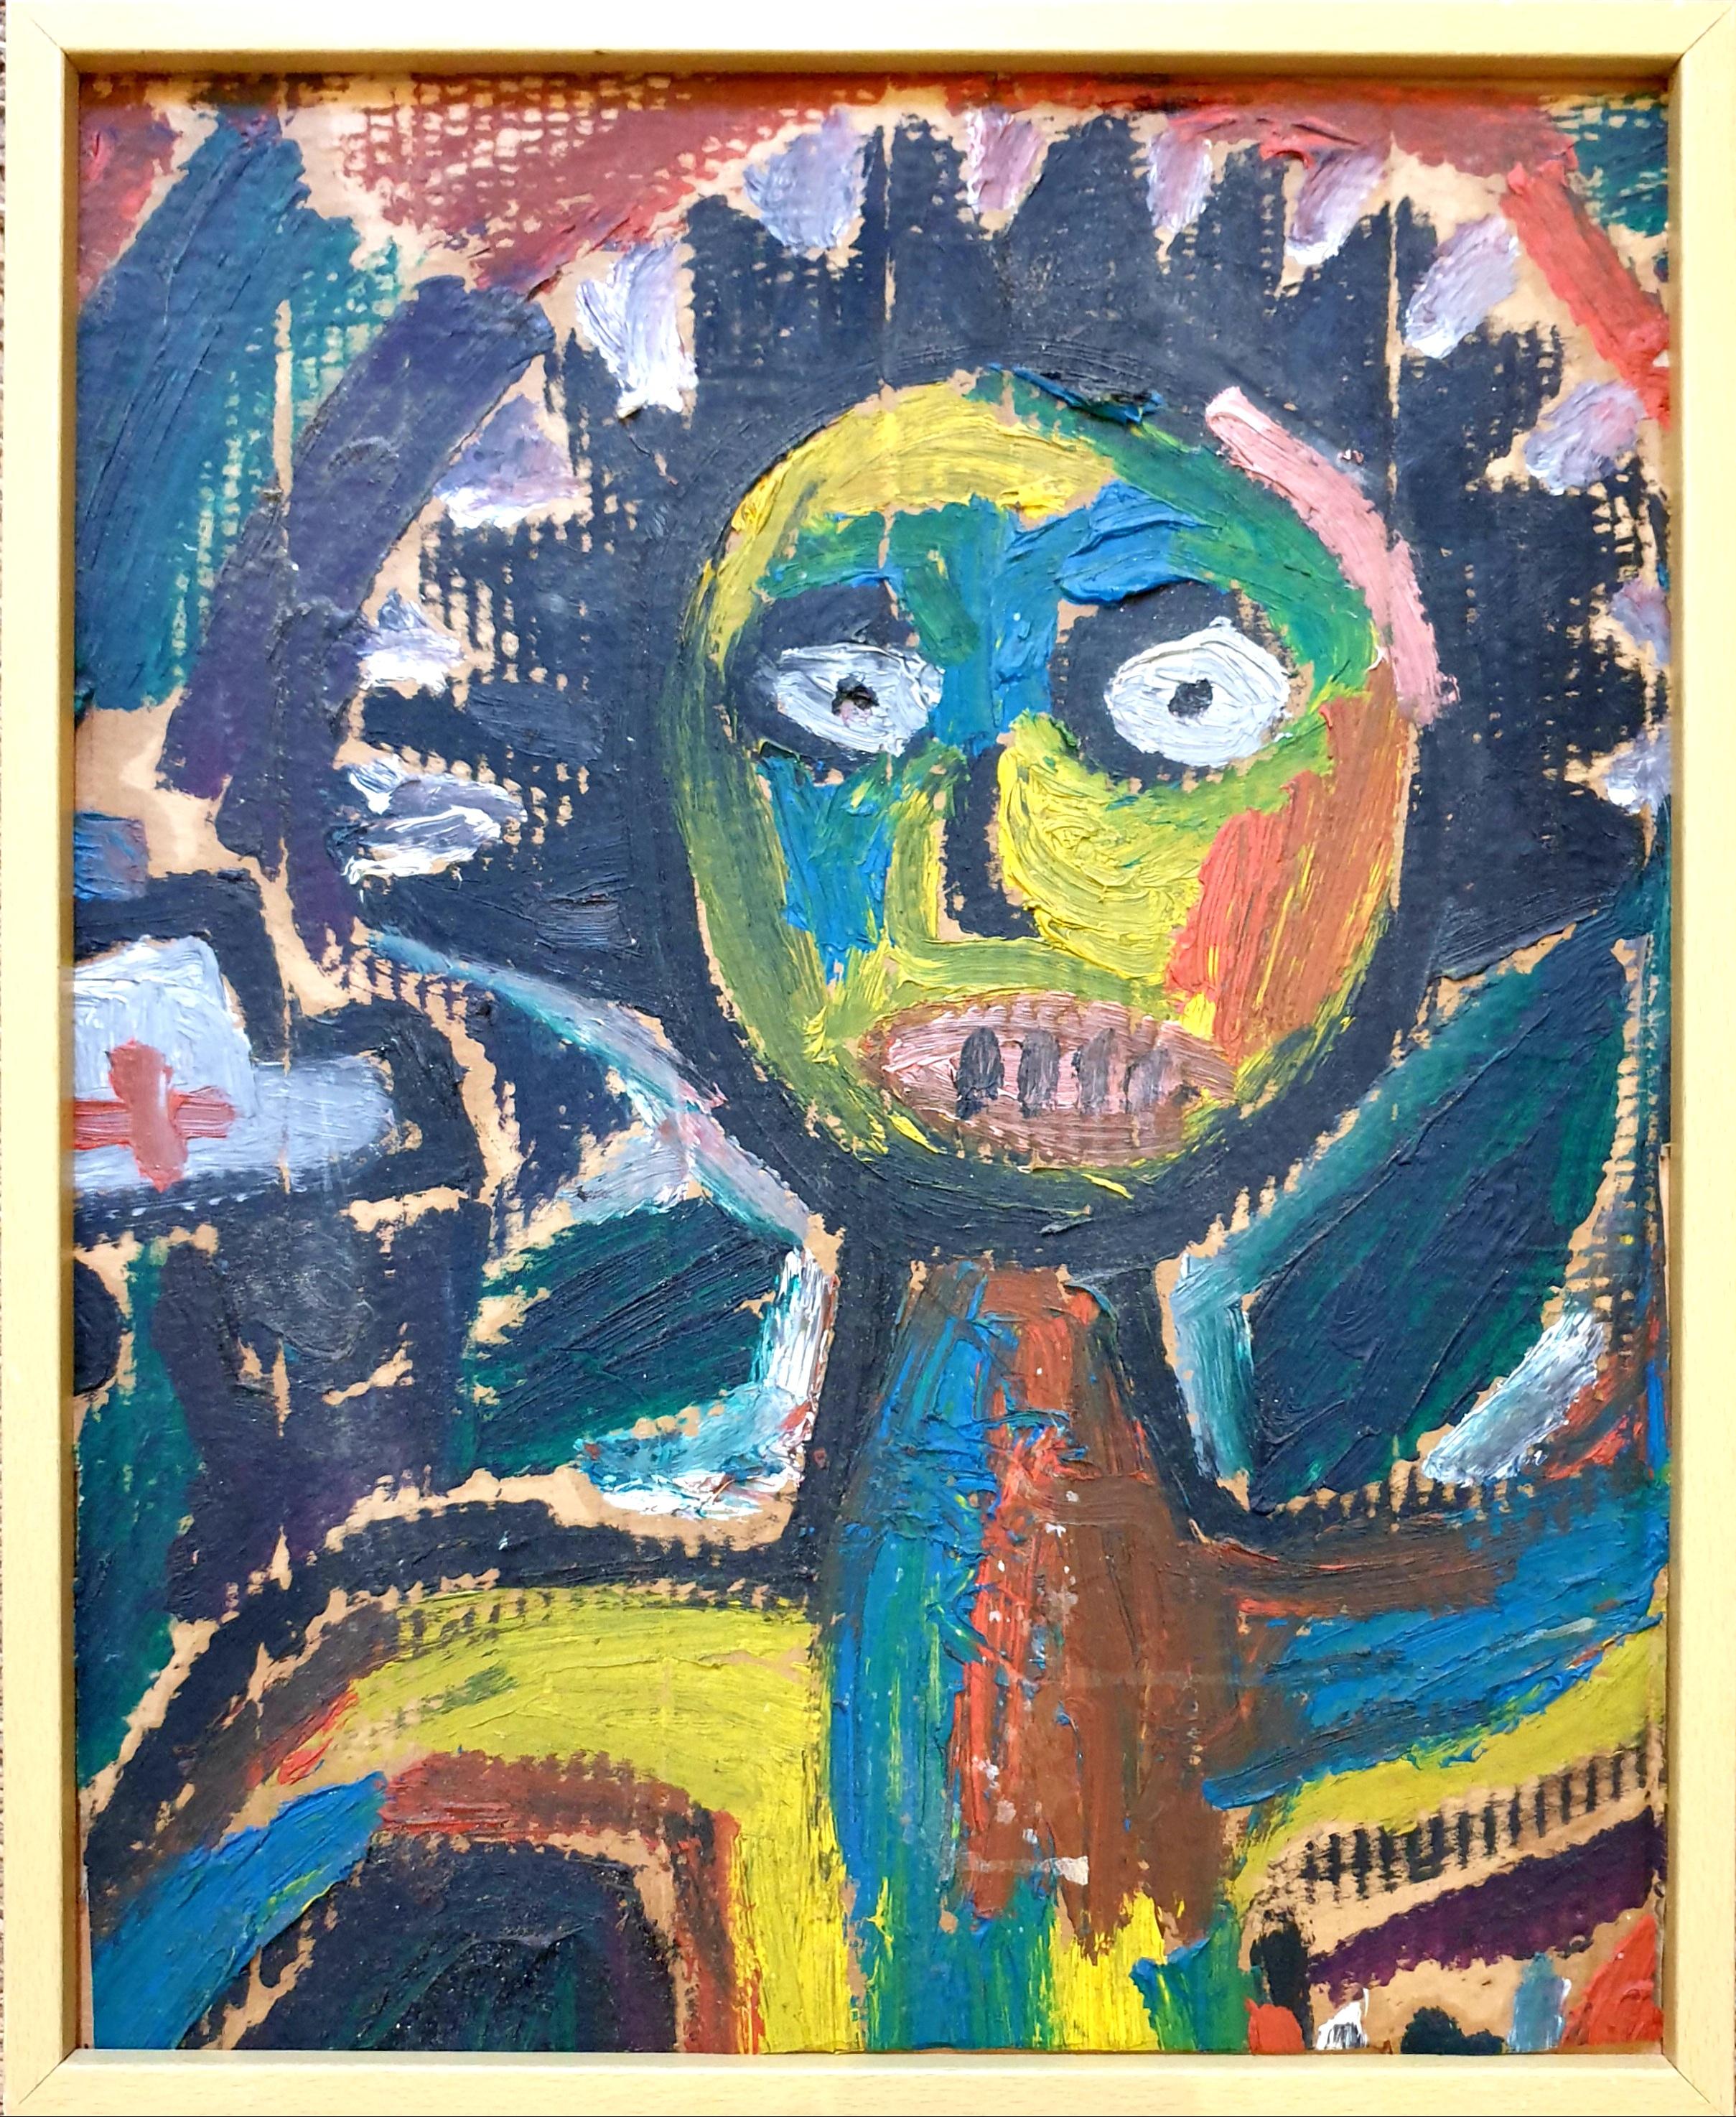 Hommage néo-expressionniste à Basquiat. Acrylique sur carton.